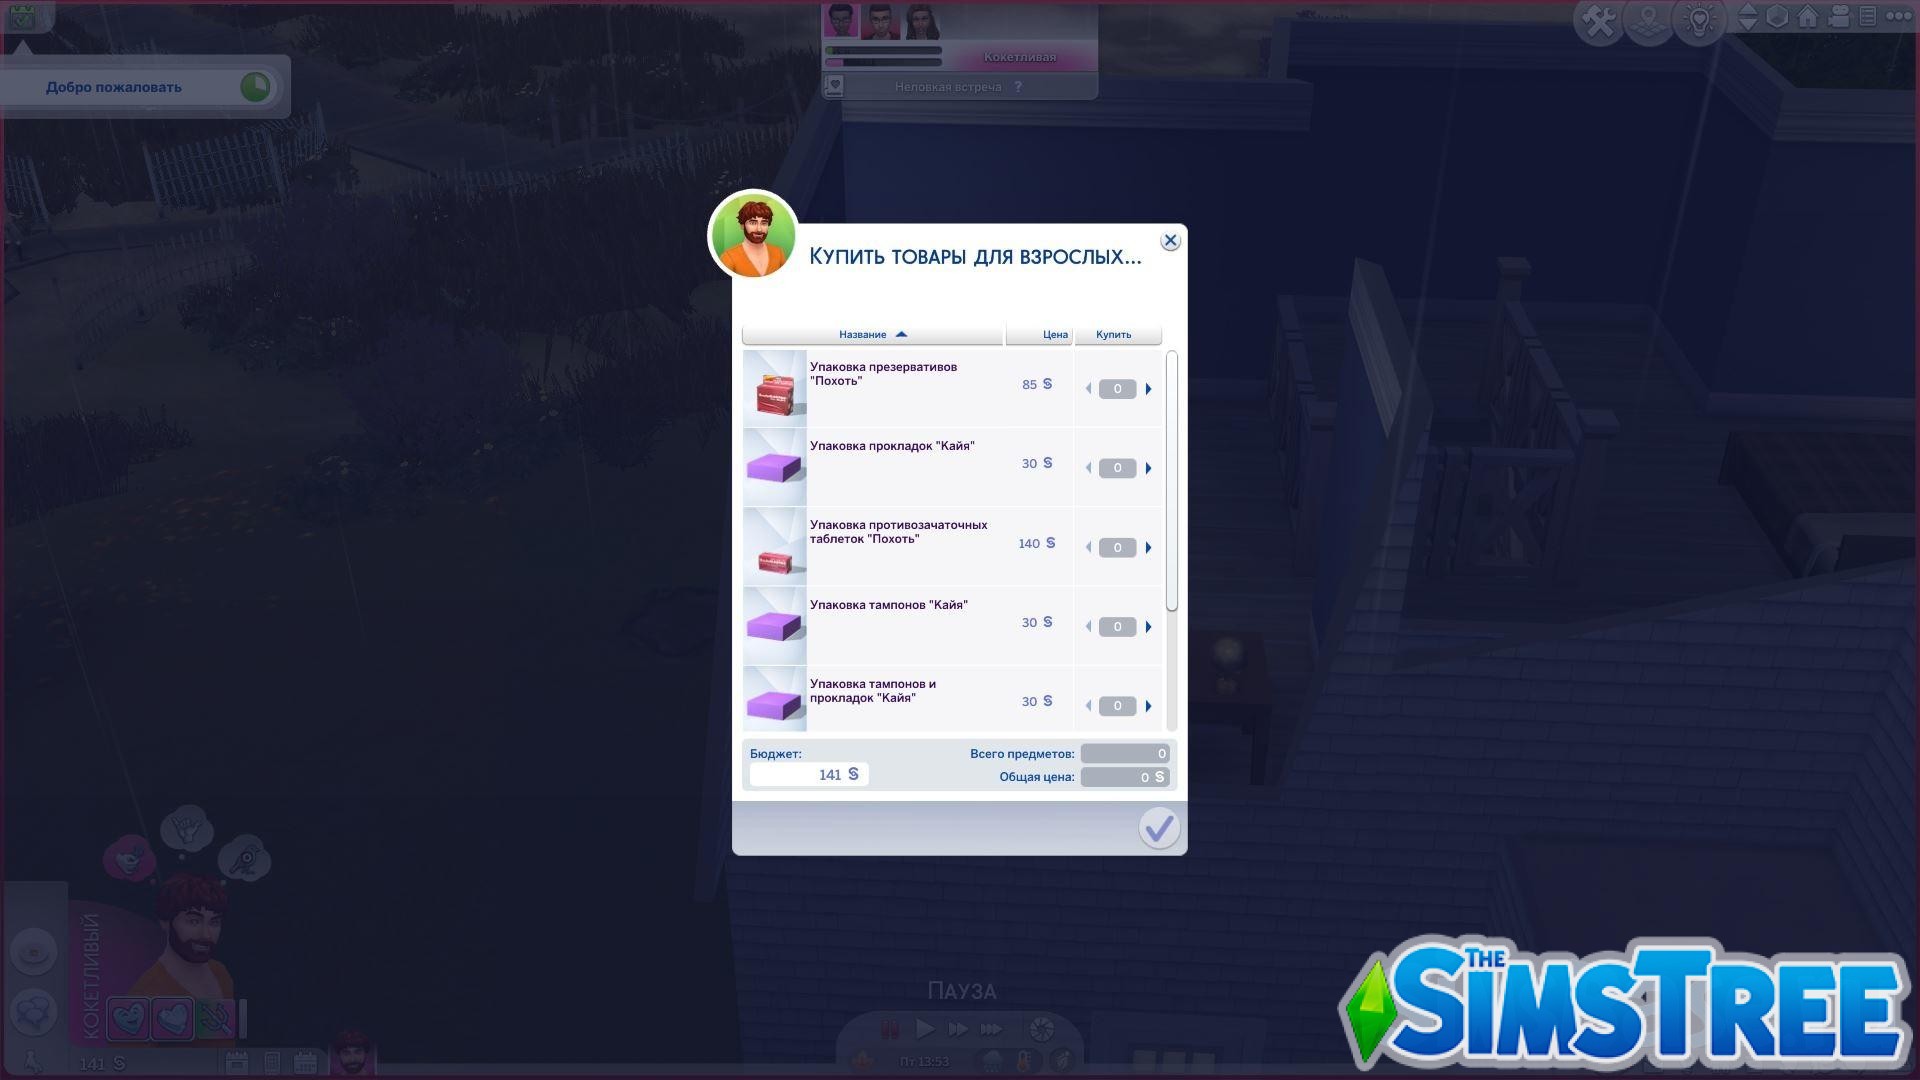 Sims 4: Зачем нужен и что можно сделать с модом Wonderful Whims от TURBODRIVER